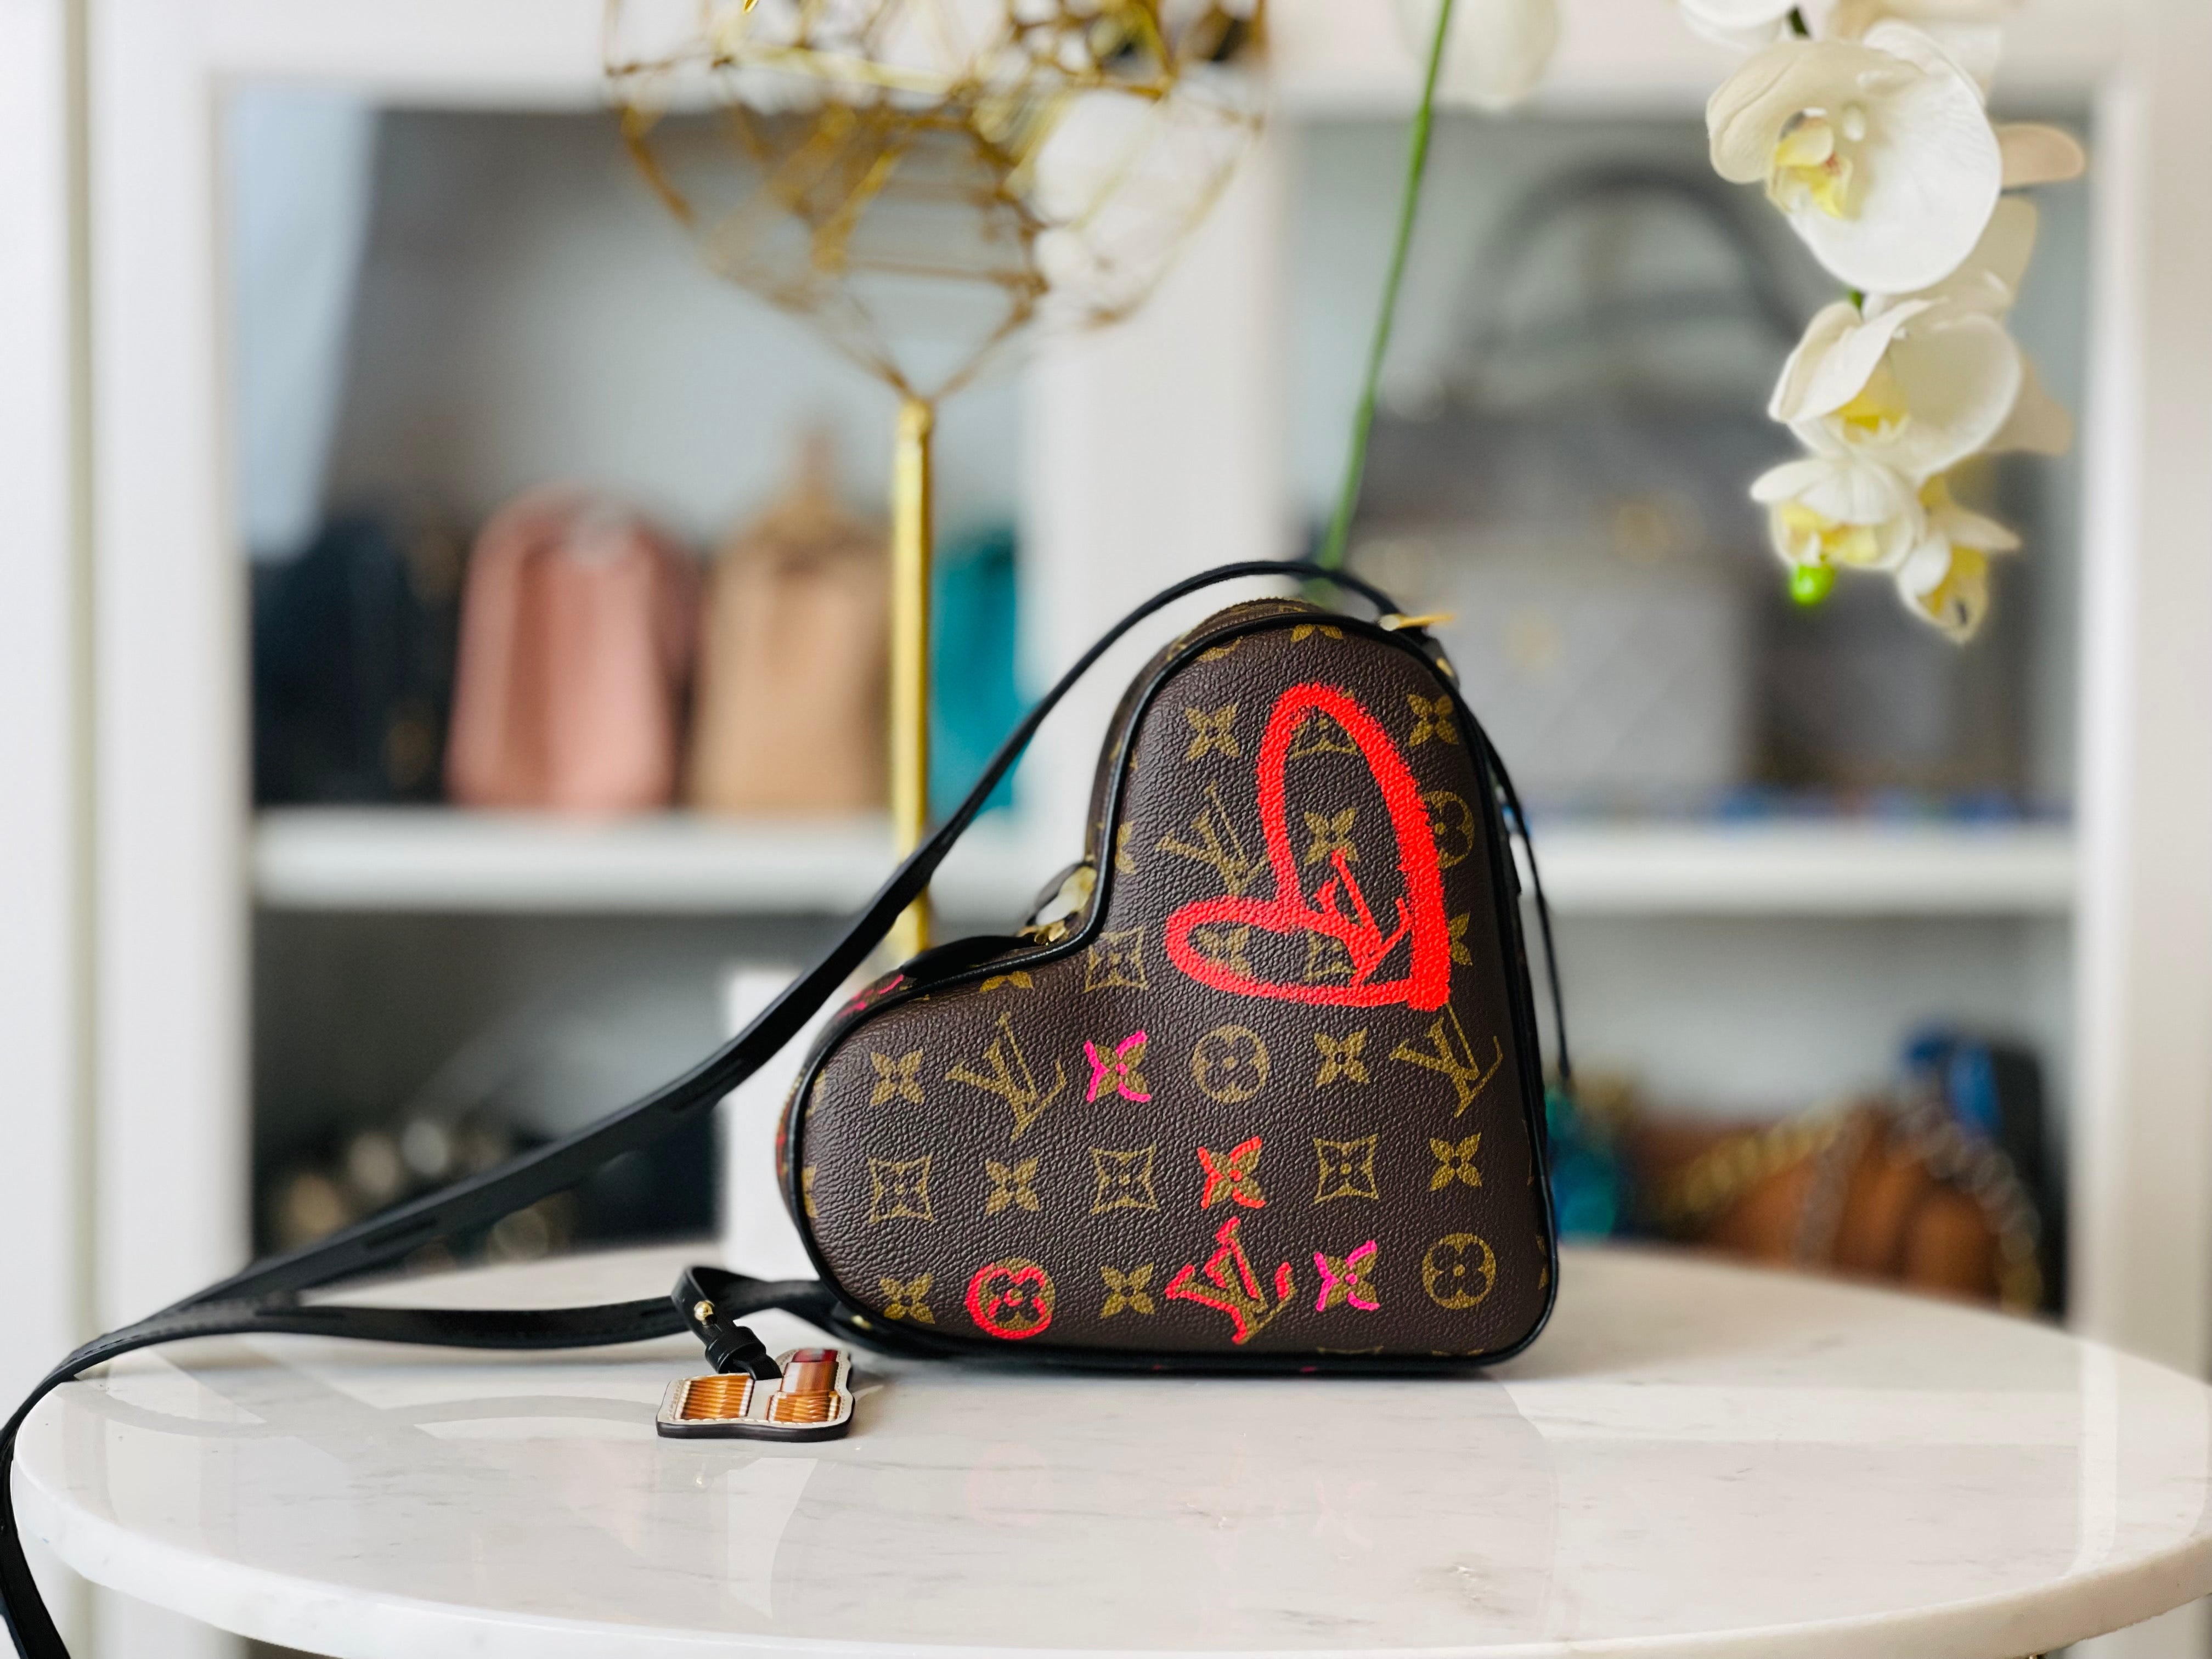 Louis Vuitton Limited Edition Sac Coeur Heart Bag